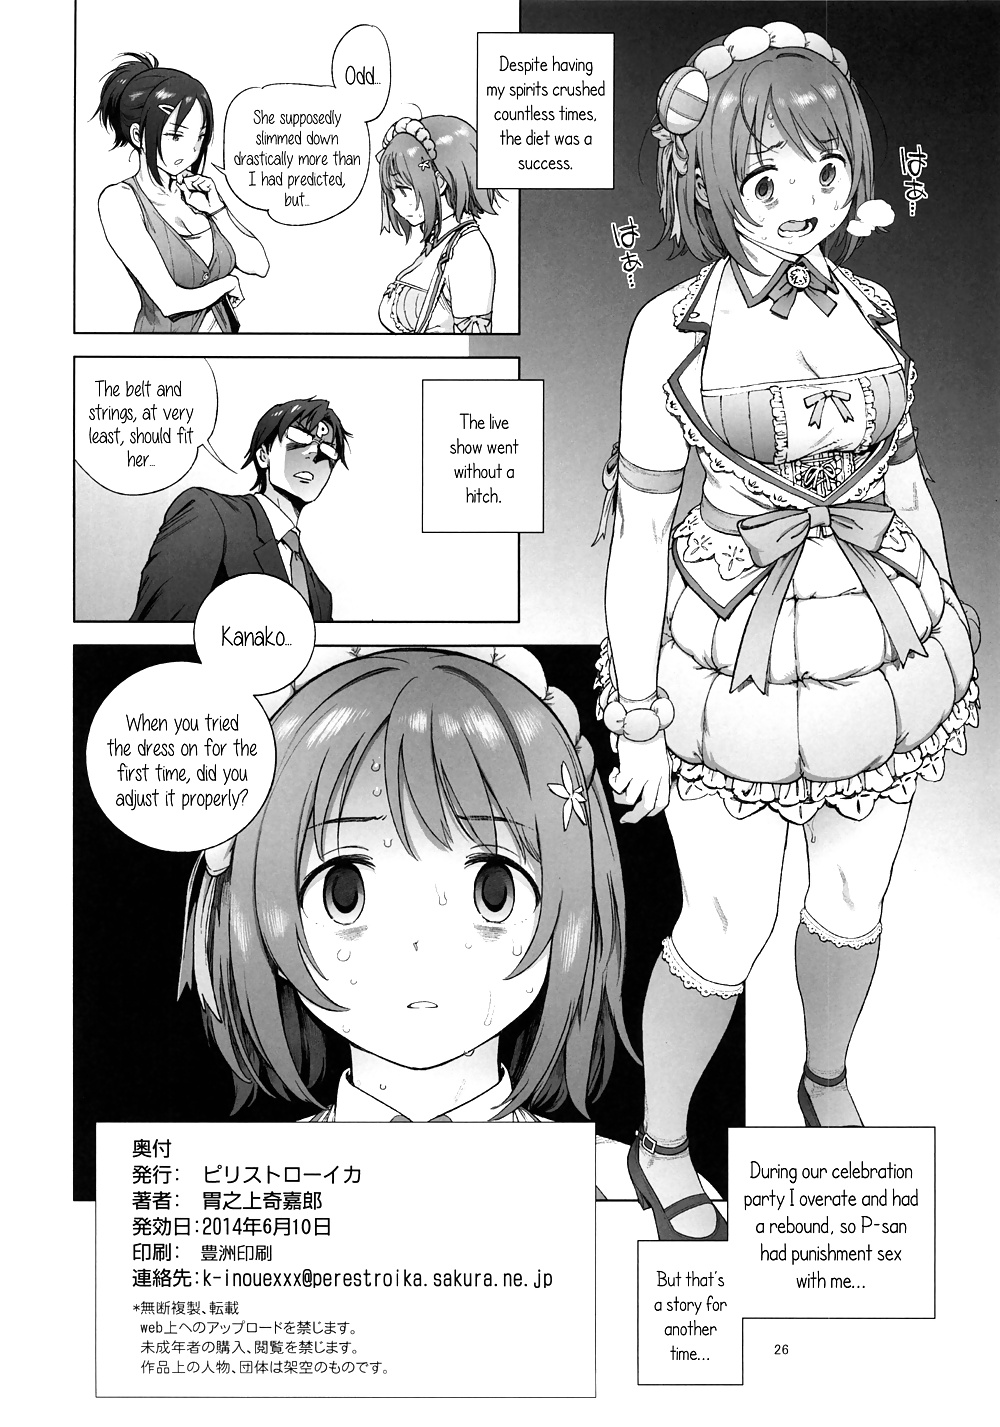 Kanako's Fluffy Diet(THE IDOLMASTER CINDERELLA GIRLS) #28494233